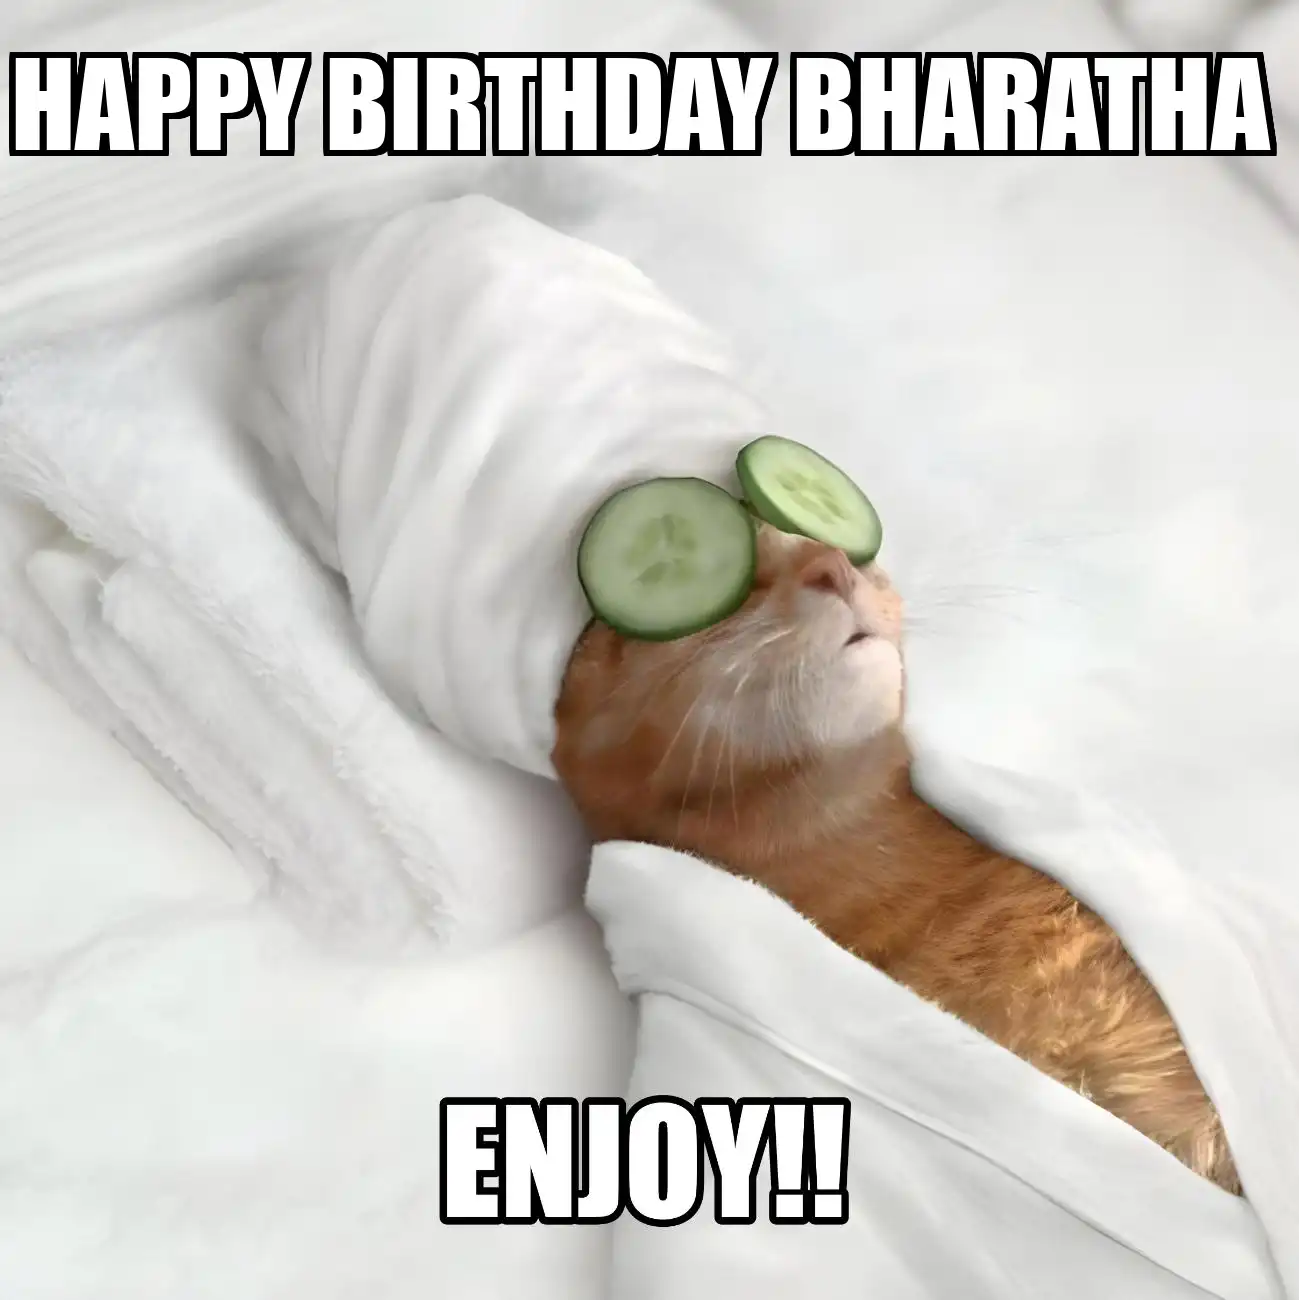 Happy Birthday Bharatha Enjoy Cat Meme